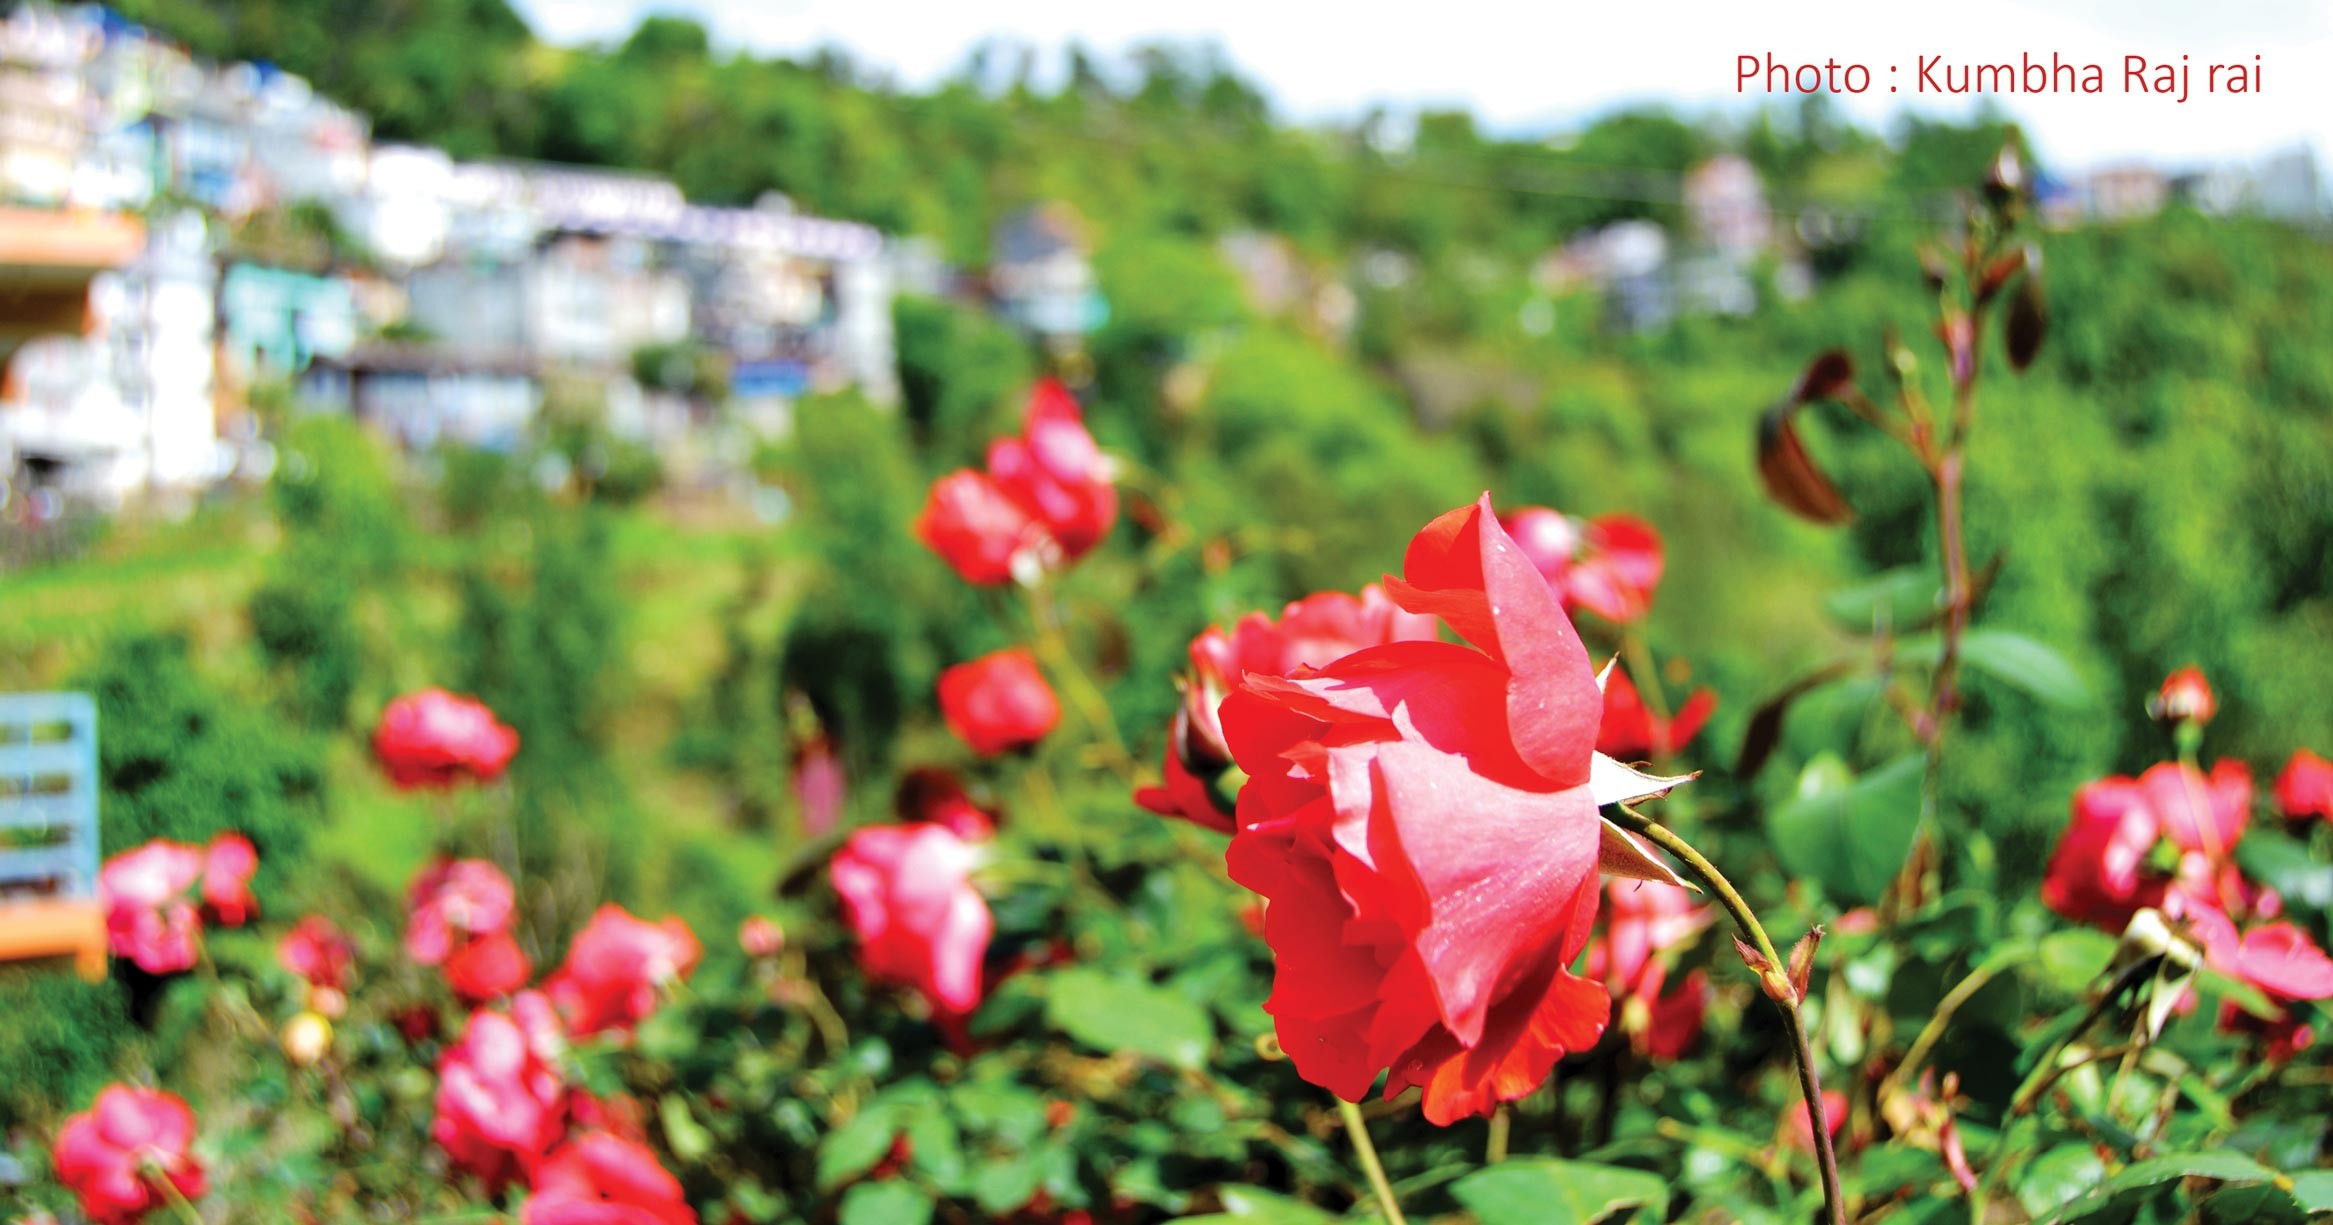 फोटो अफ द डे : सिद्धिचरण पार्कमा  फुलेको गुलाबको फूल र पृष्ठभूमिमा ओखलढुंगा सदरमुकाम